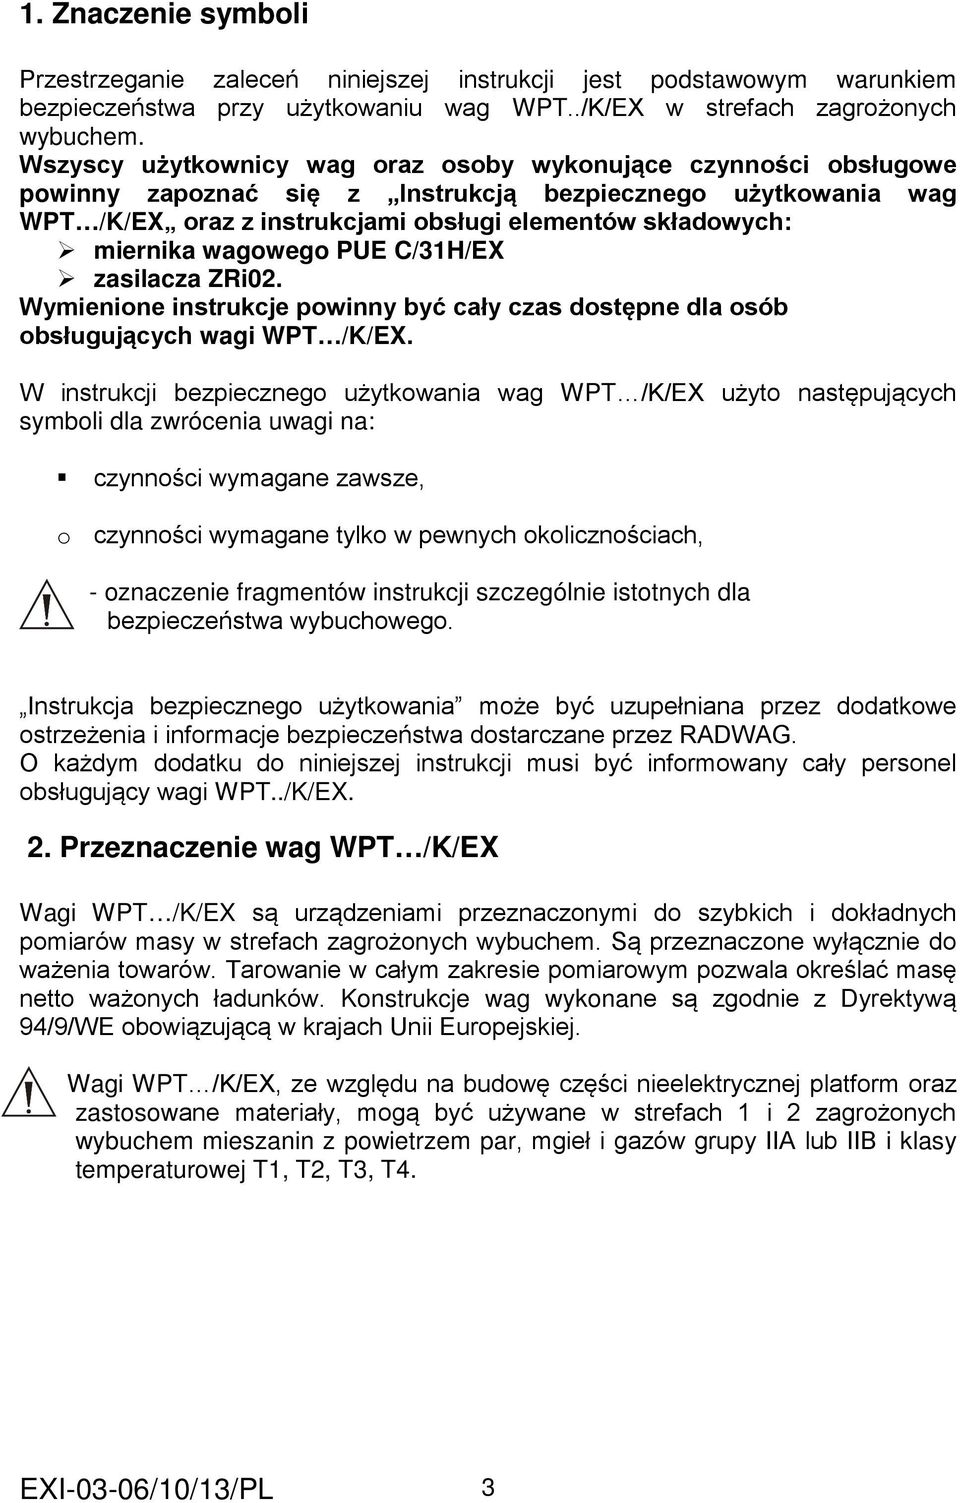 wagowego PUE C/31H/EX zasilacza ZRi02. Wymienione instrukcje powinny być cały czas dostępne dla osób obsługujących wagi WPT /K/EX.